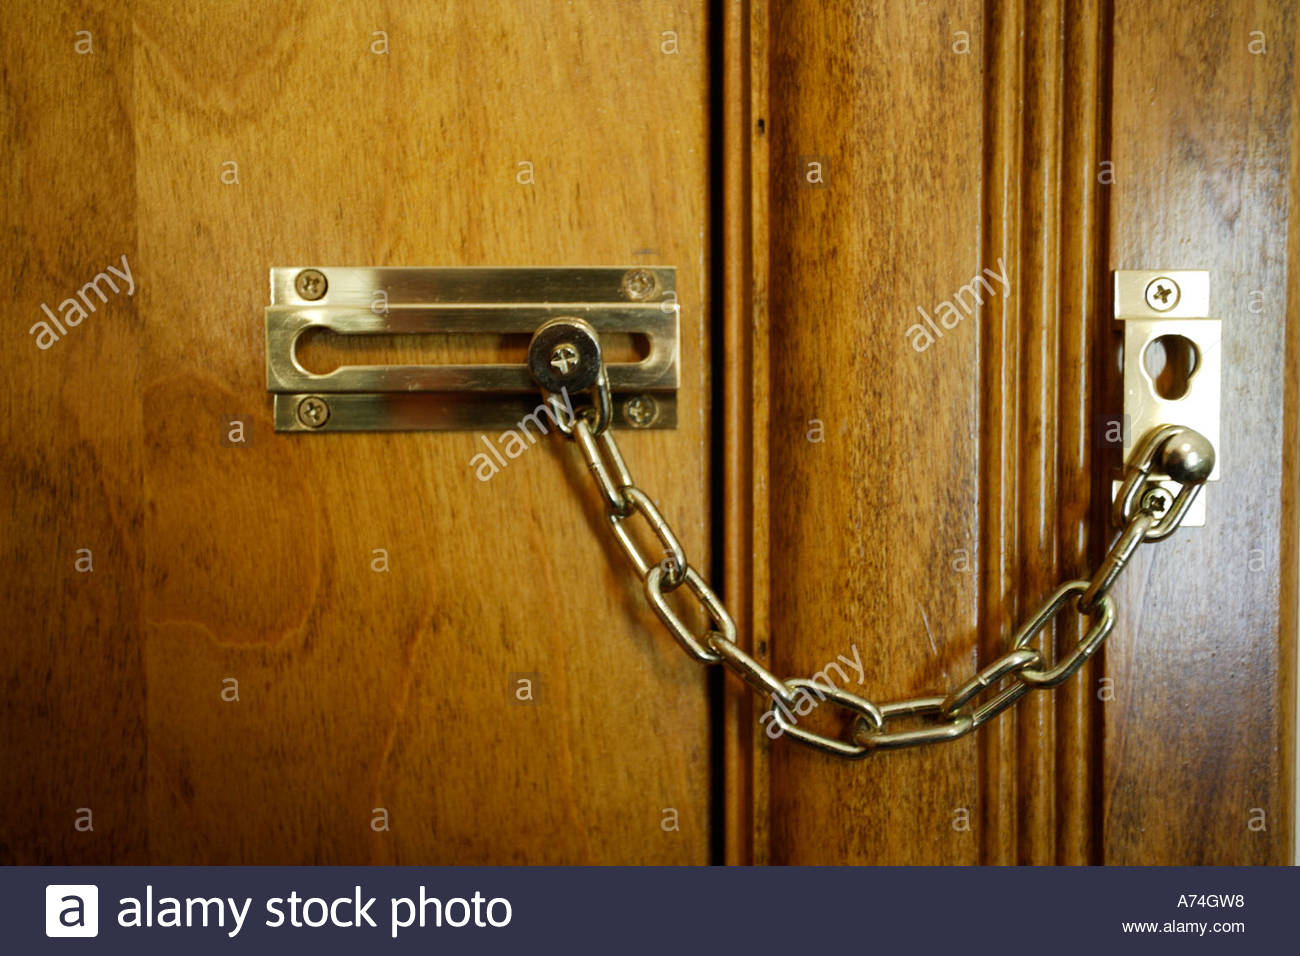 door knob lock stuck photo - 19